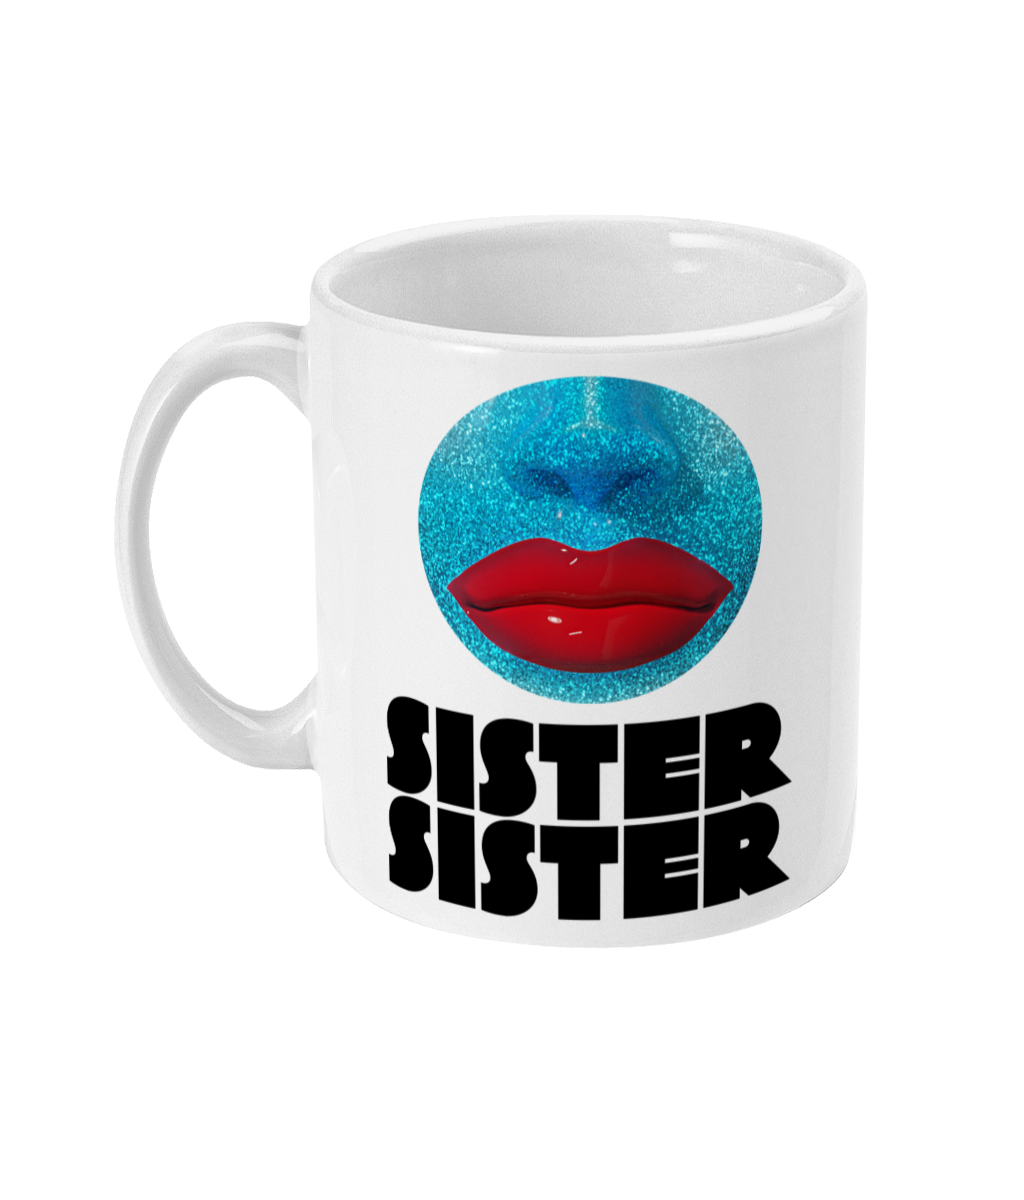 Sister Sister - Orb Mug